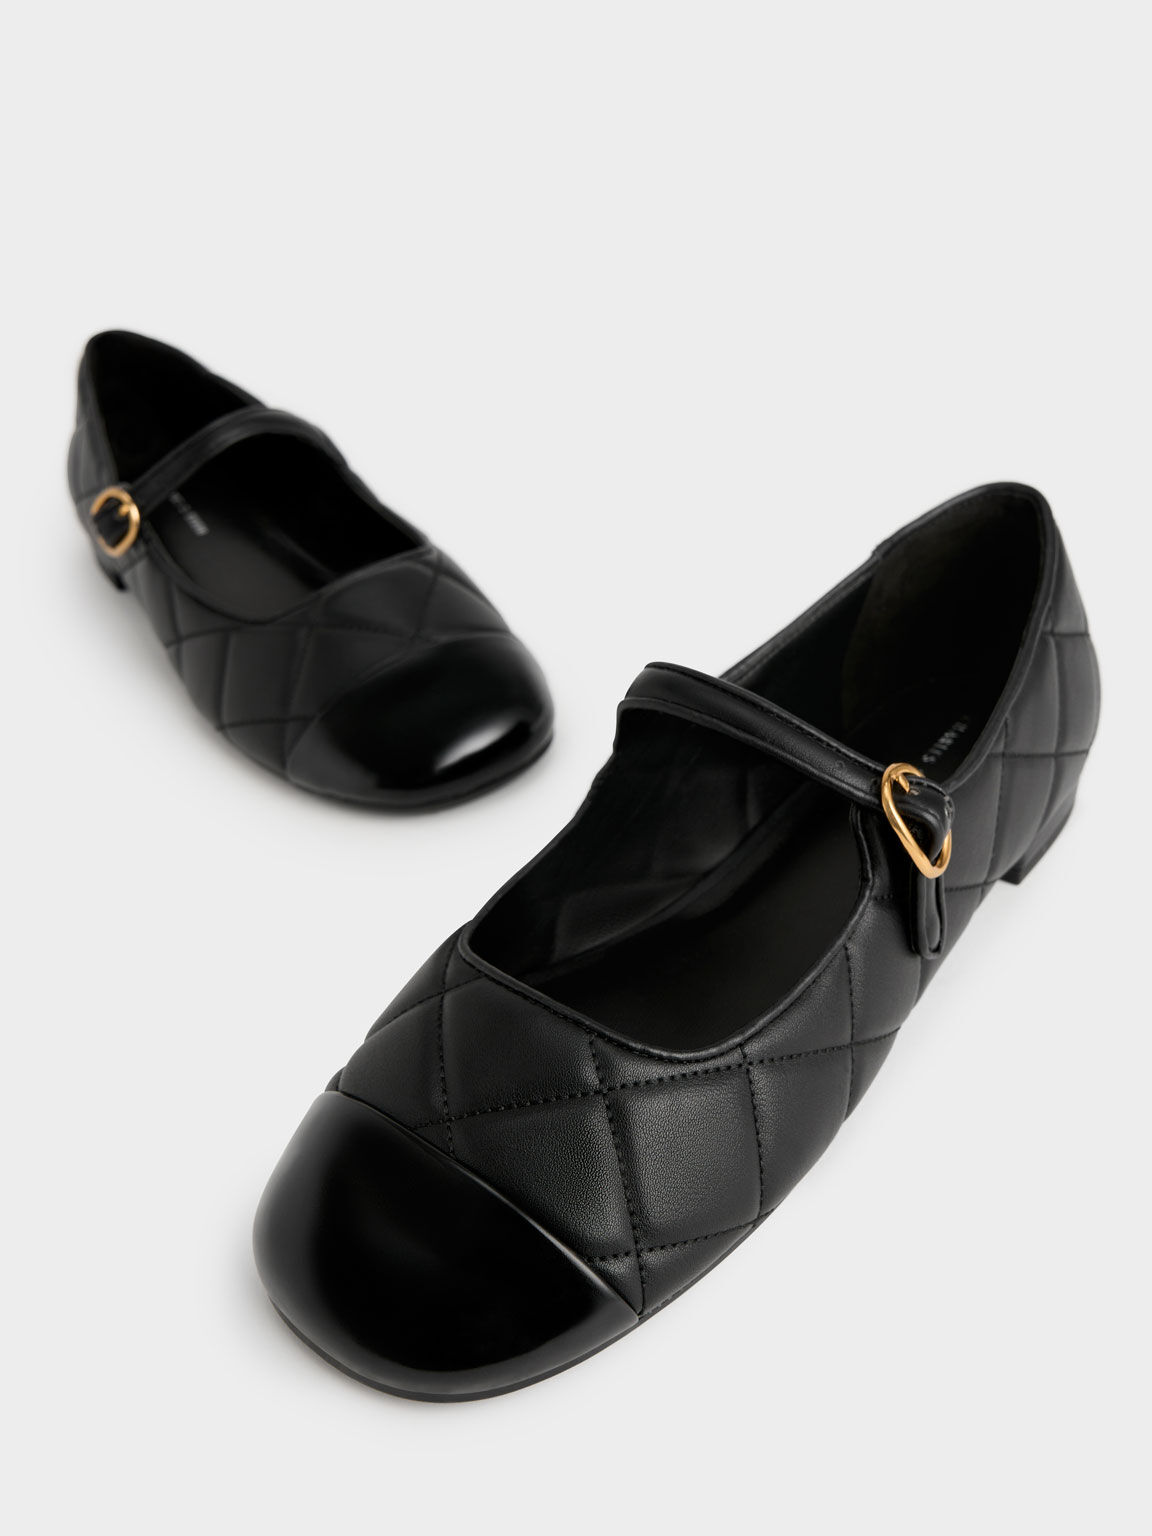 Sepatu Toe-Cap Quilted Mary Janes, Black, hi-res